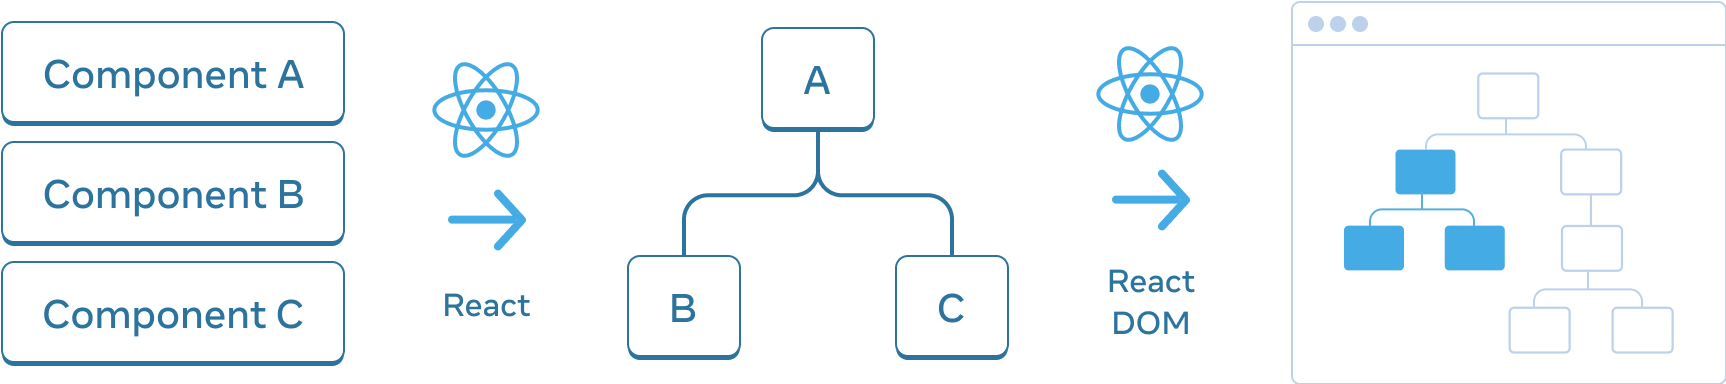 가로로 배열된 세 부분으로 구성된 다이어그램입니다. 첫 번째 부분에는 '컴포넌트 A', '컴포넌트 B', '컴포넌트 C'라는 레이블이 붙은 세 개의 직사각형이 수직으로 쌓여 있습니다. 다음 패널로 넘어가는 화살표는 위에 React 로고가 있고 'React'라고 레이블이 붙어 있습니다. 중간 섹션에는 'A'라고 레이블이 붙은 루트와 'B', 'C'라고 레이블이 붙은 두 자식이 있는 컴포넌트 트리가 포함되어 있습니다. 다음 섹션은 다시 위에 React 로고가 있는 화살표를 사용하여 'React DOM'이라는 레이블과 함께 전환됩니다. 세 번째이자 마지막 섹션은 브라우저의 와이어프레임으로, 8개의 노드가 있는 트리를 포함하고 있으며, 그 중 일부분만 강조되어 있습니다(중간 섹션에서 파생된 서브트리를 나타냅니다).